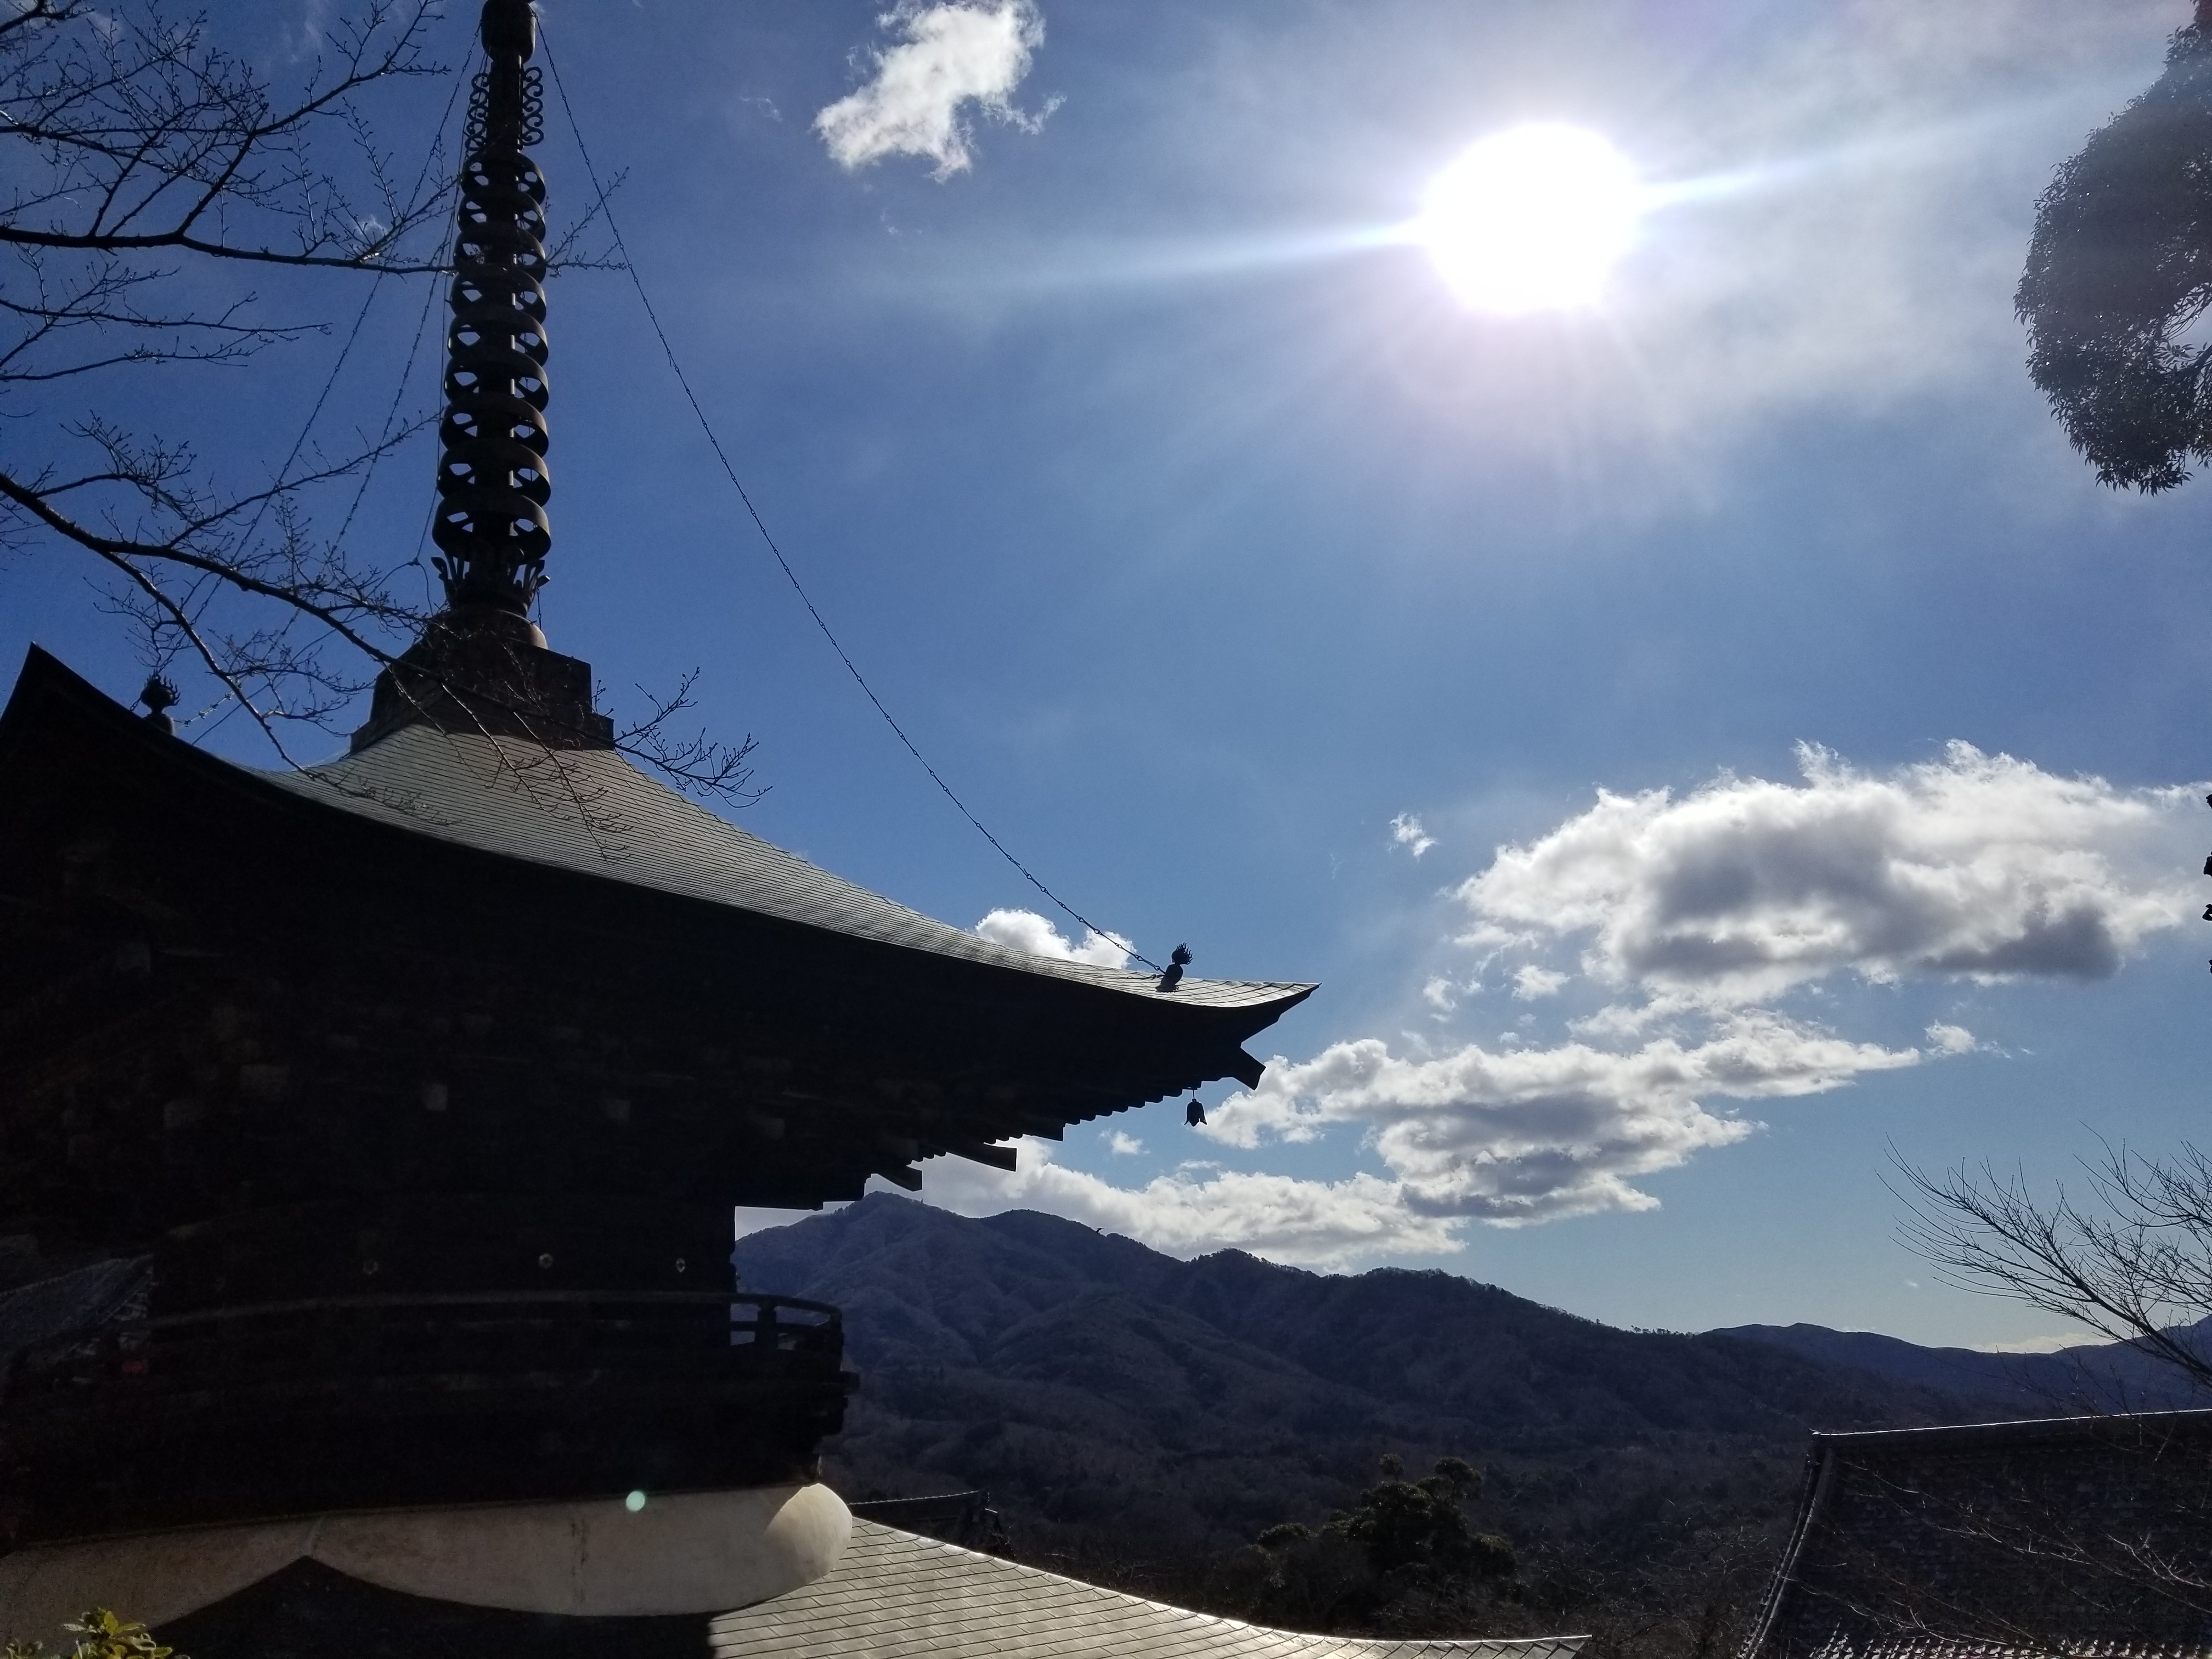 ナイトフラワーガーデンと大平山神社と雨引観音バスツアーのおすすめポイント詳細